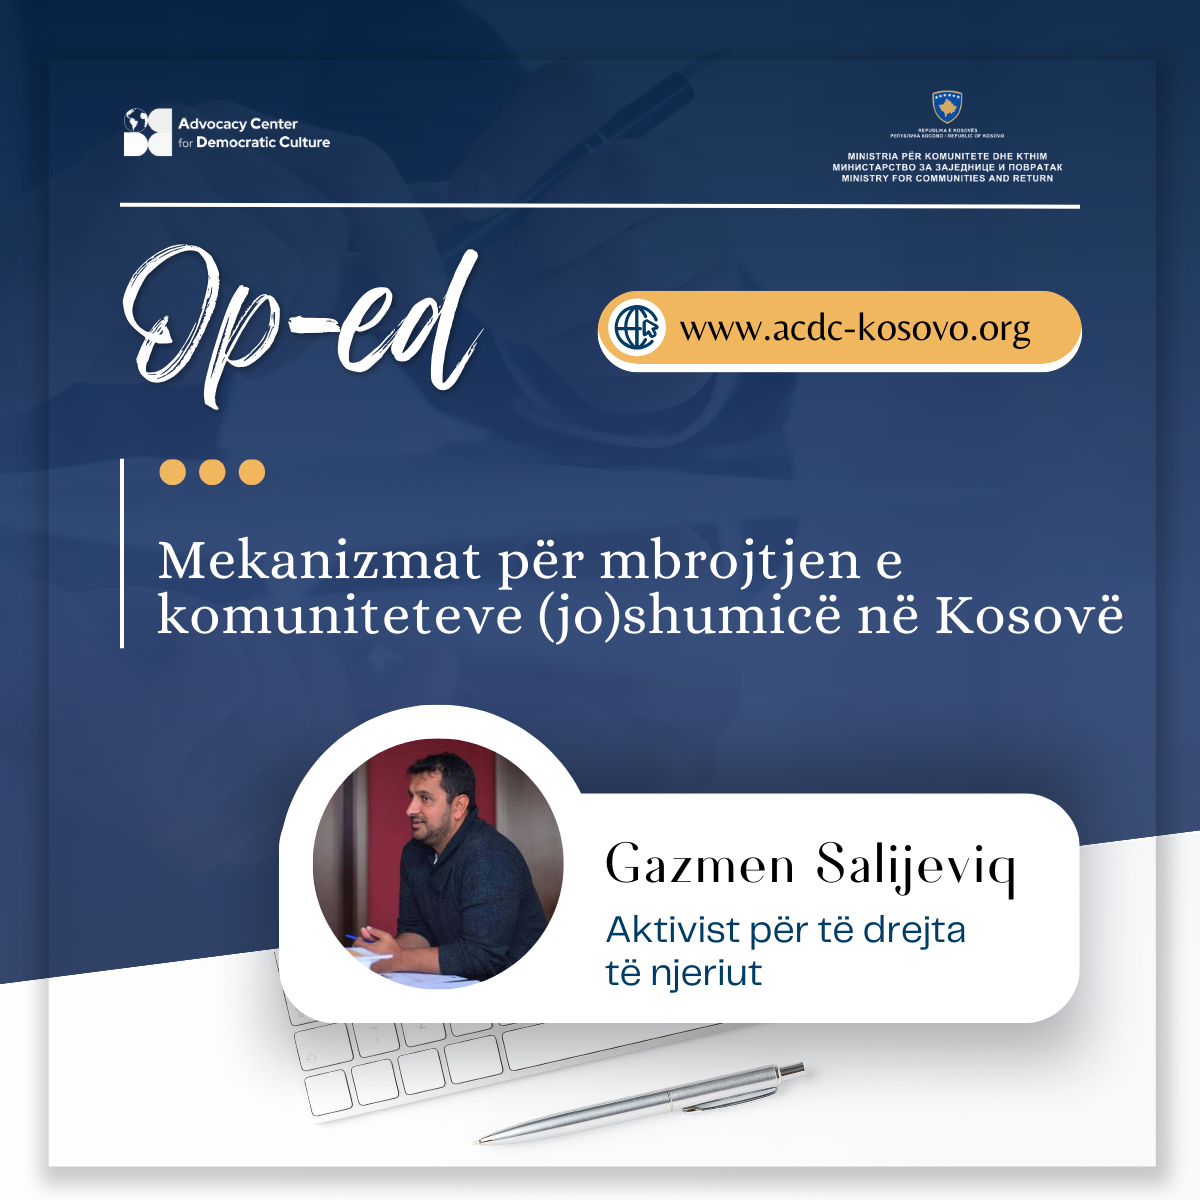 op-ed-mekanizmat-per-mbrojtjen-e-komuniteteve-joshumice-ne-kosove-2